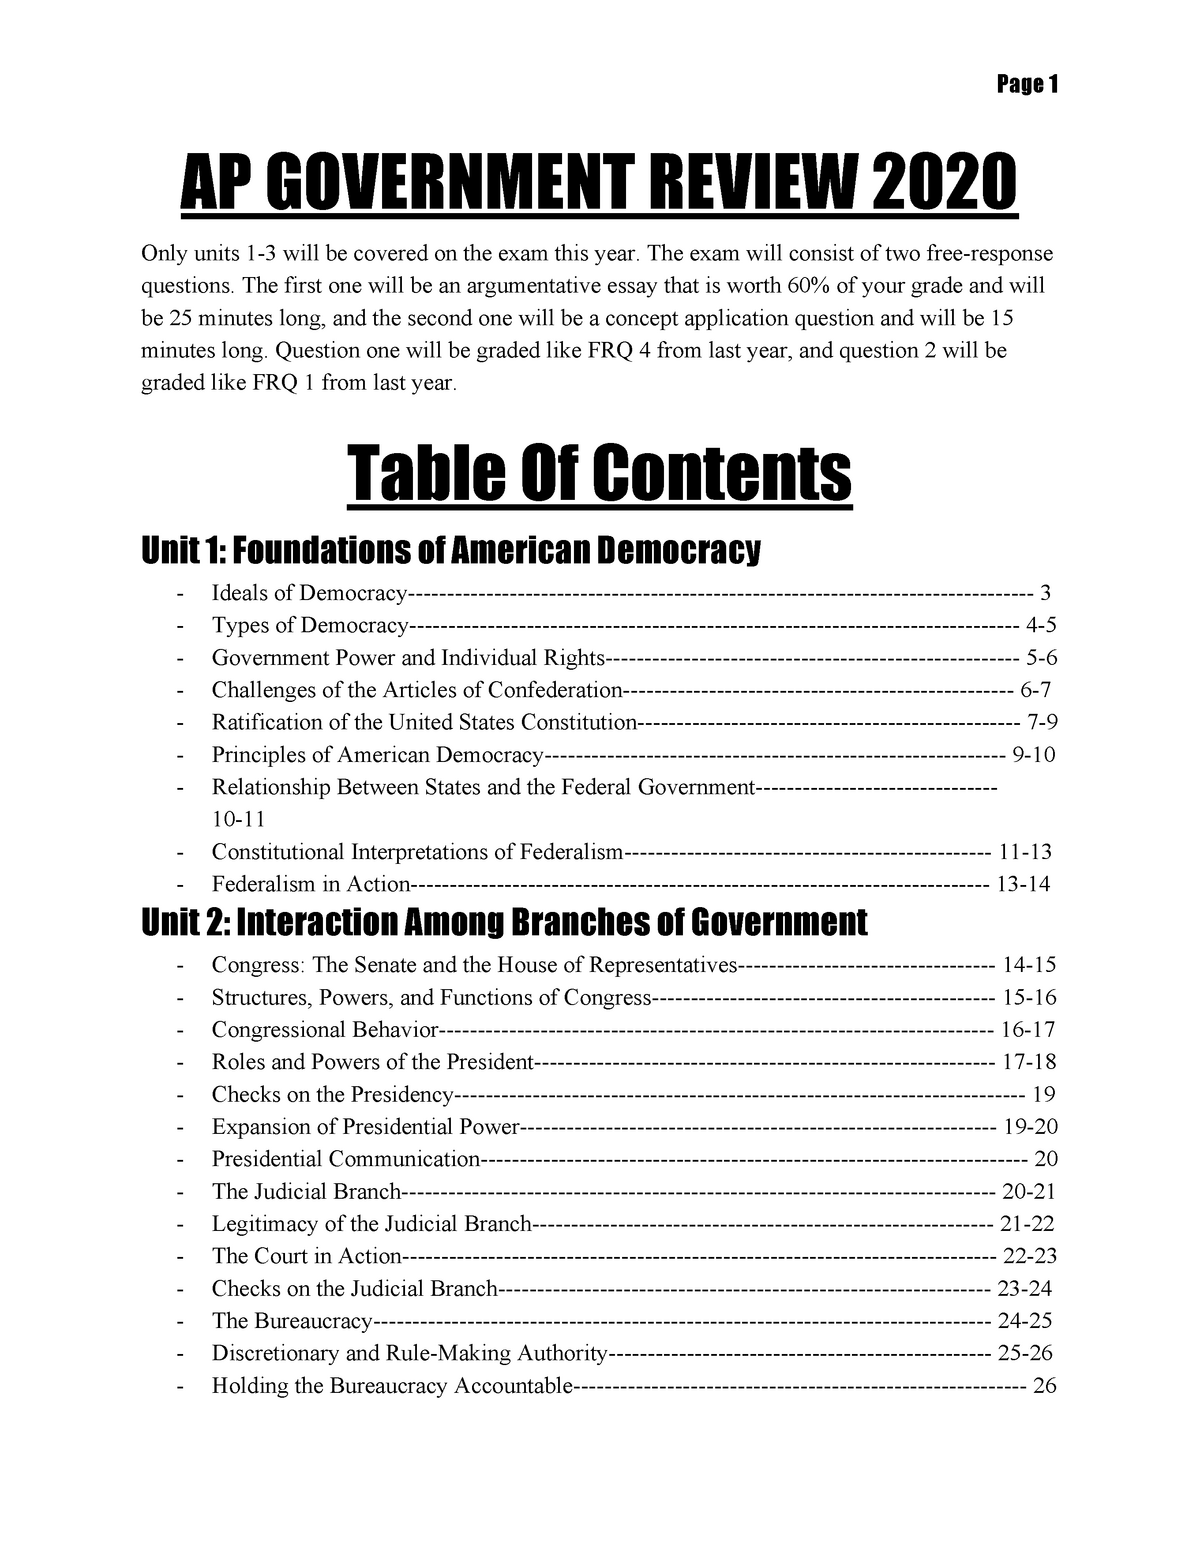 AP Government Review 2020 AP GOVERNMENT REVIEW 2020 Only units 13